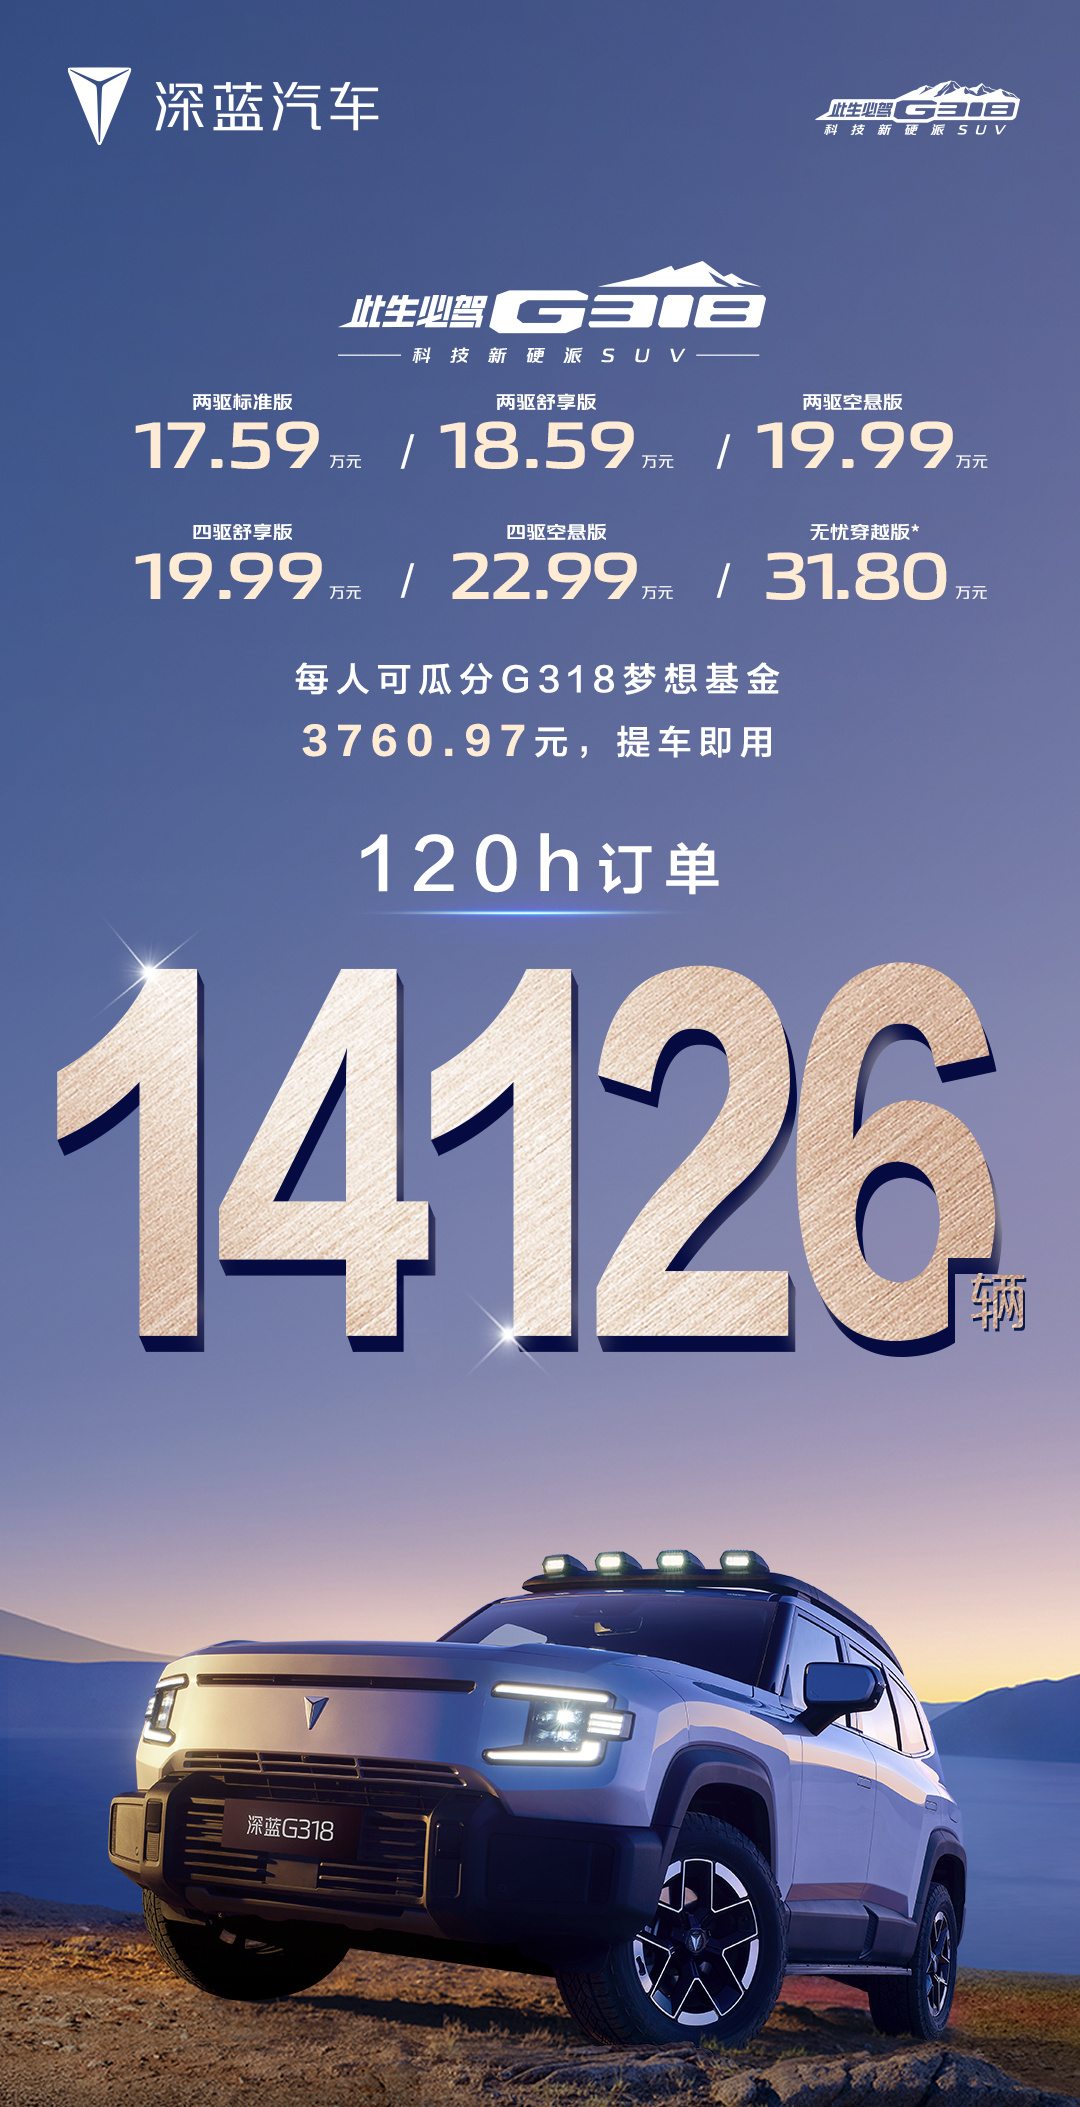 上市 5 天，深蓝 G318 订单突破 14126 辆：17.59 万-31.80 万元 第1张